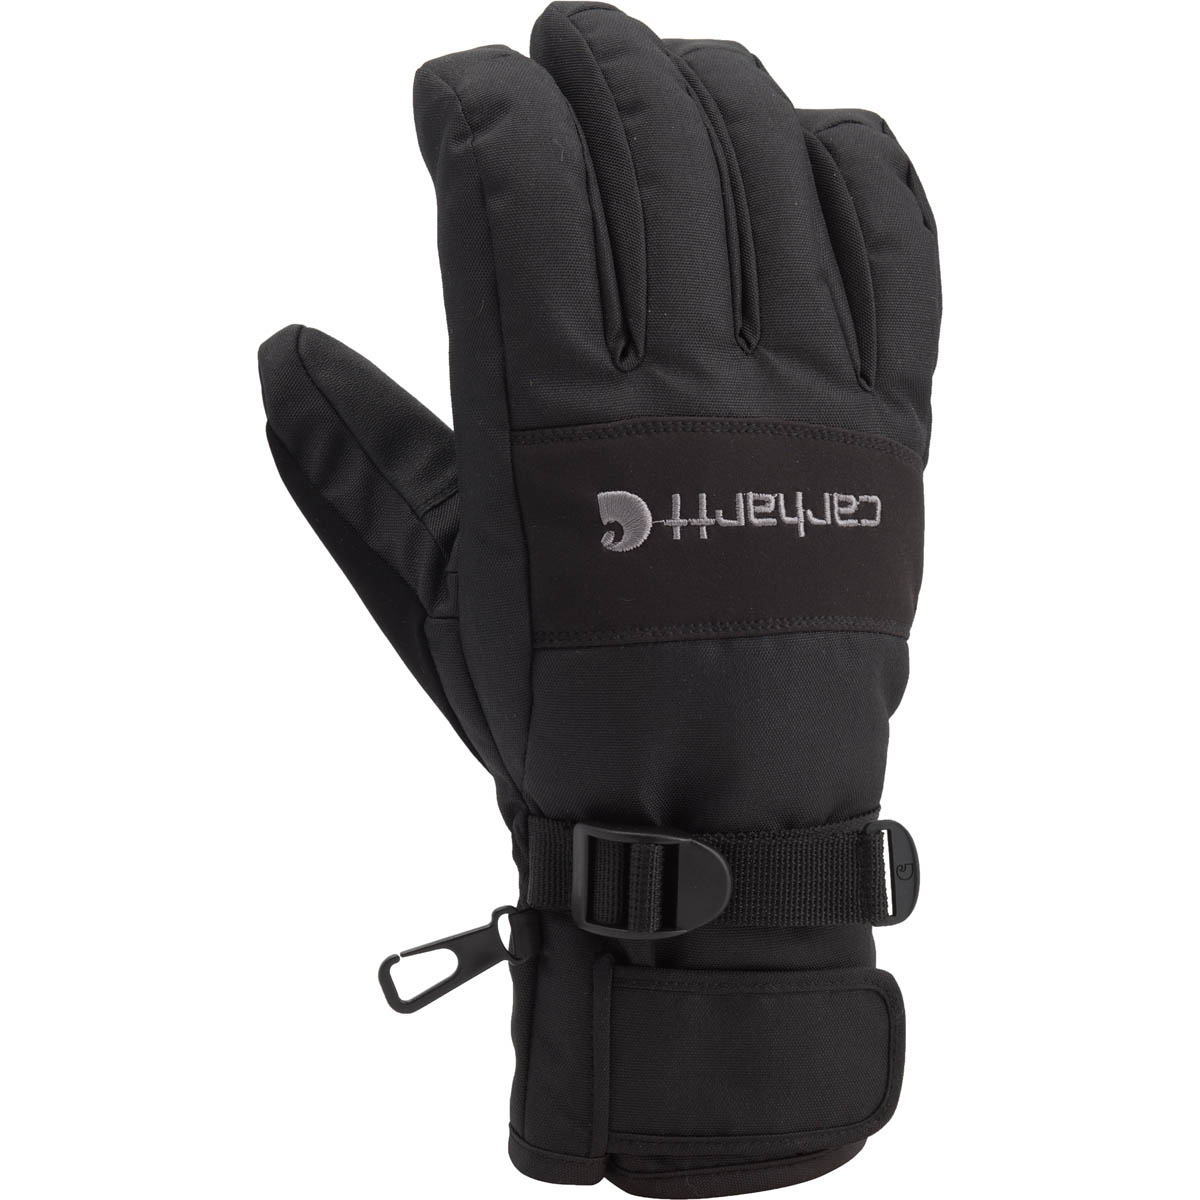 Carhartt Mens Waterproof Breathable Glove